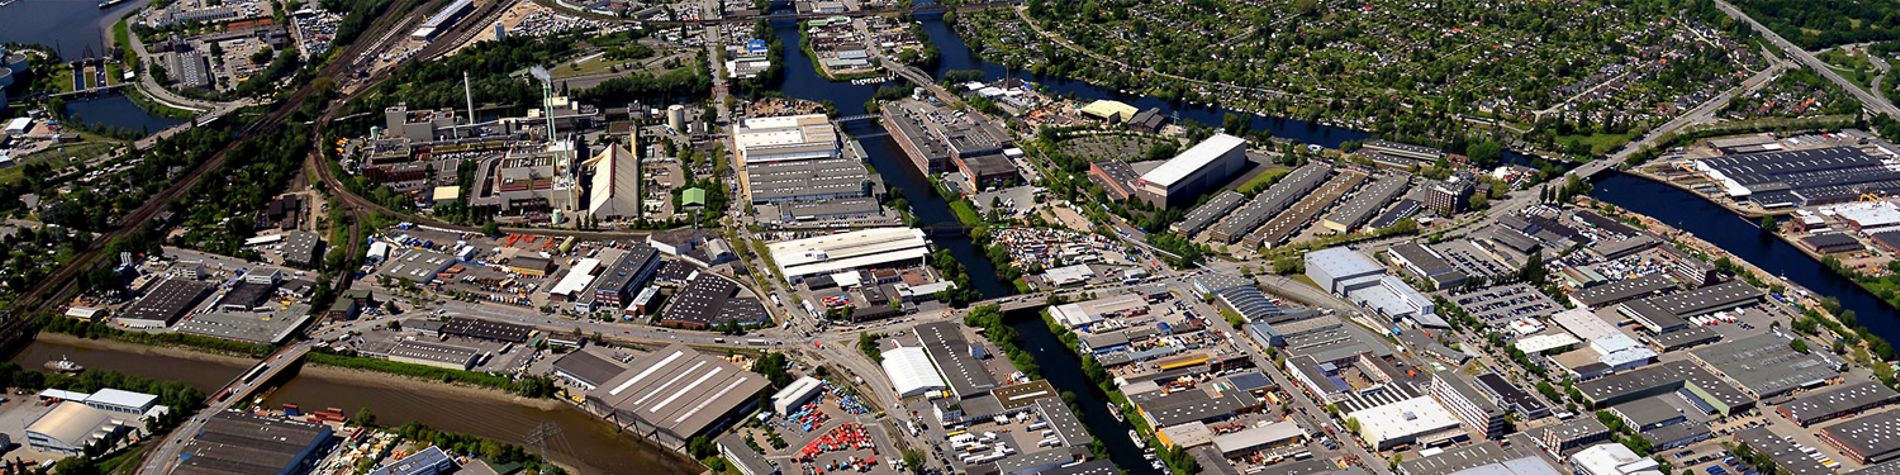 Luftbild des Industriestandortes Billbrook